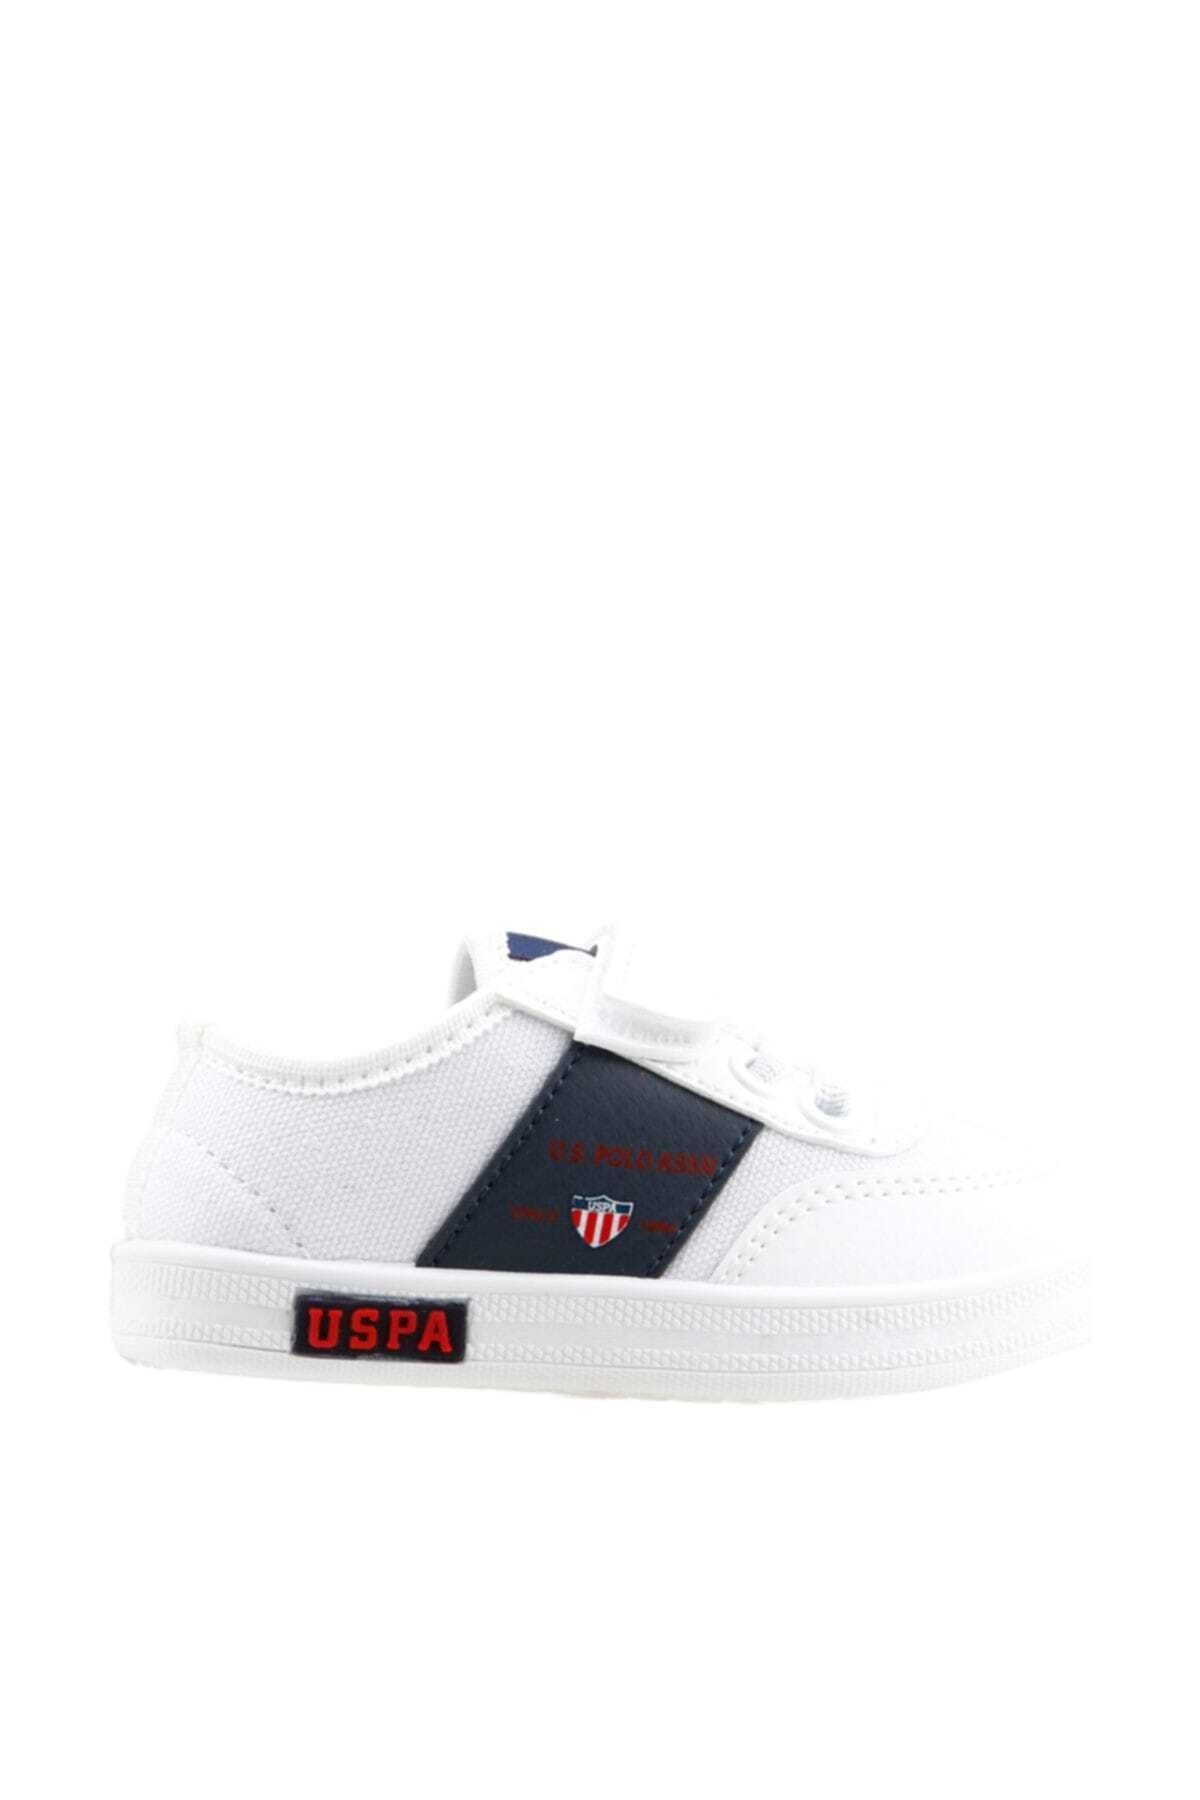 U.S. Polo Assn. Cameron Textile Beyaz Erkek Çocuk Sneaker Ayakkabı 100365360